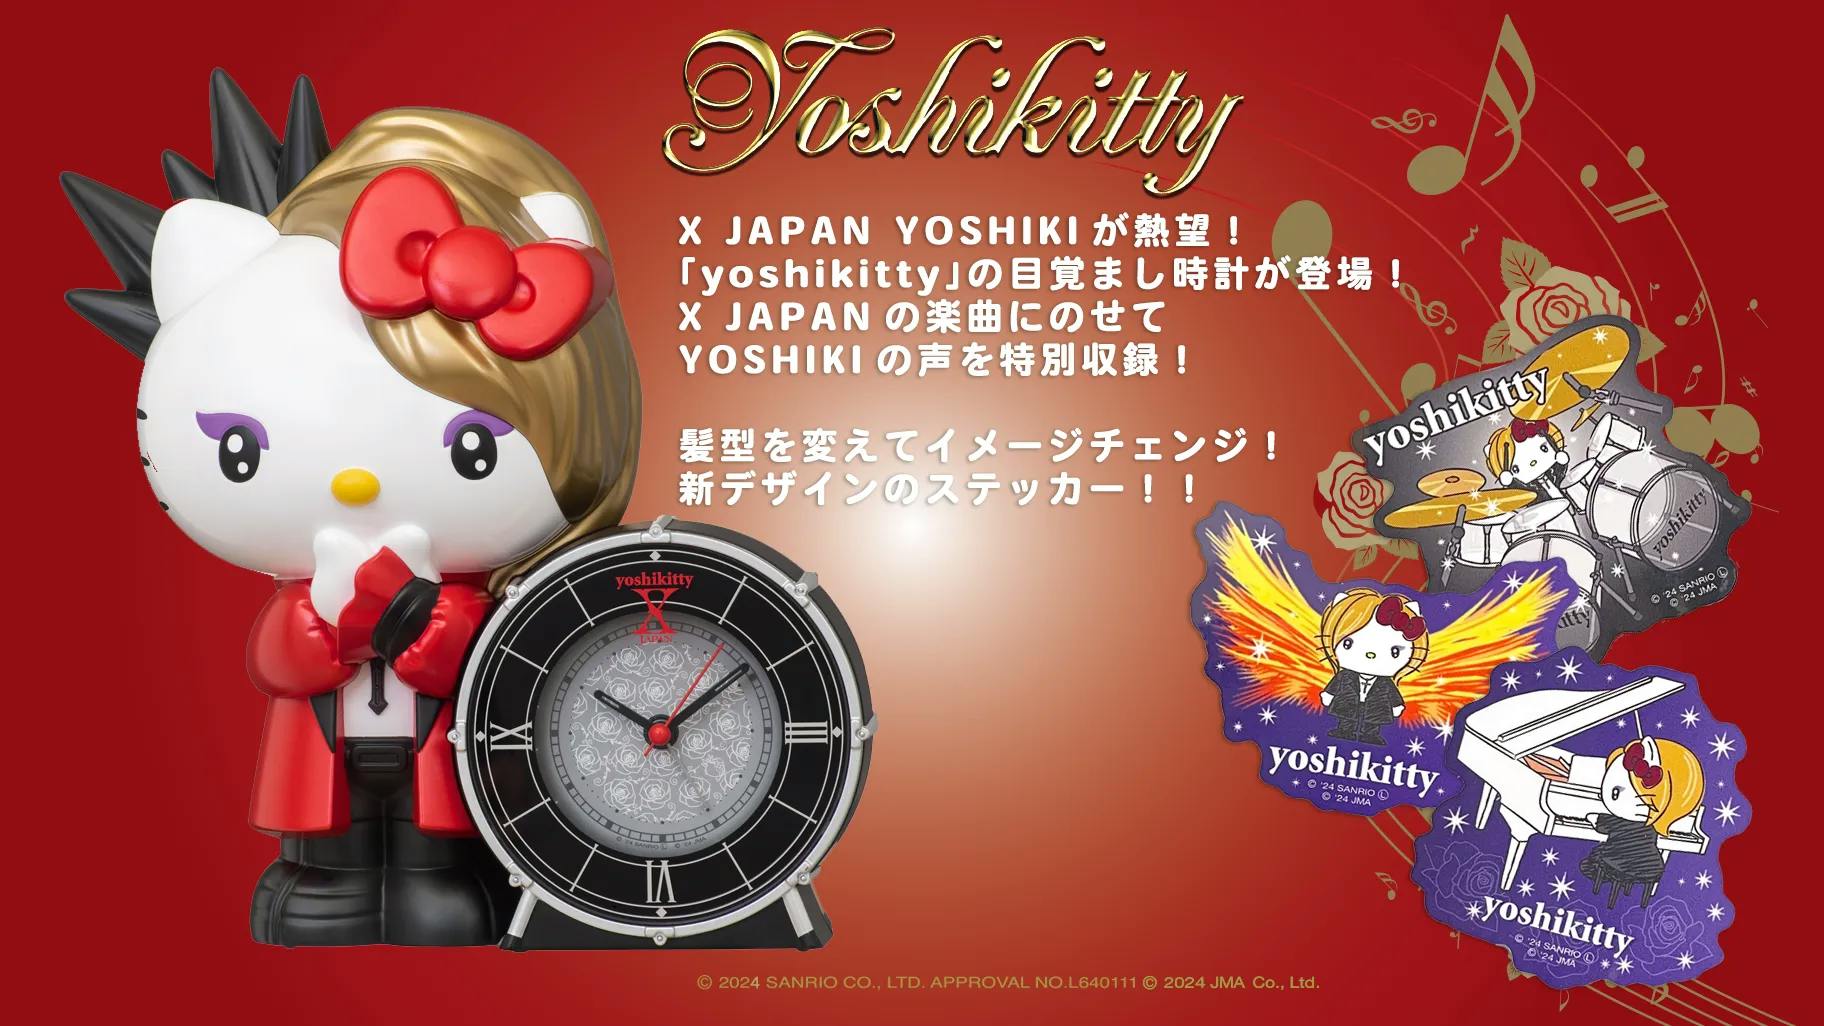 YOSHIKI×ハローキティのコラボ「yoshikitty」音声つき目覚まし時計発売